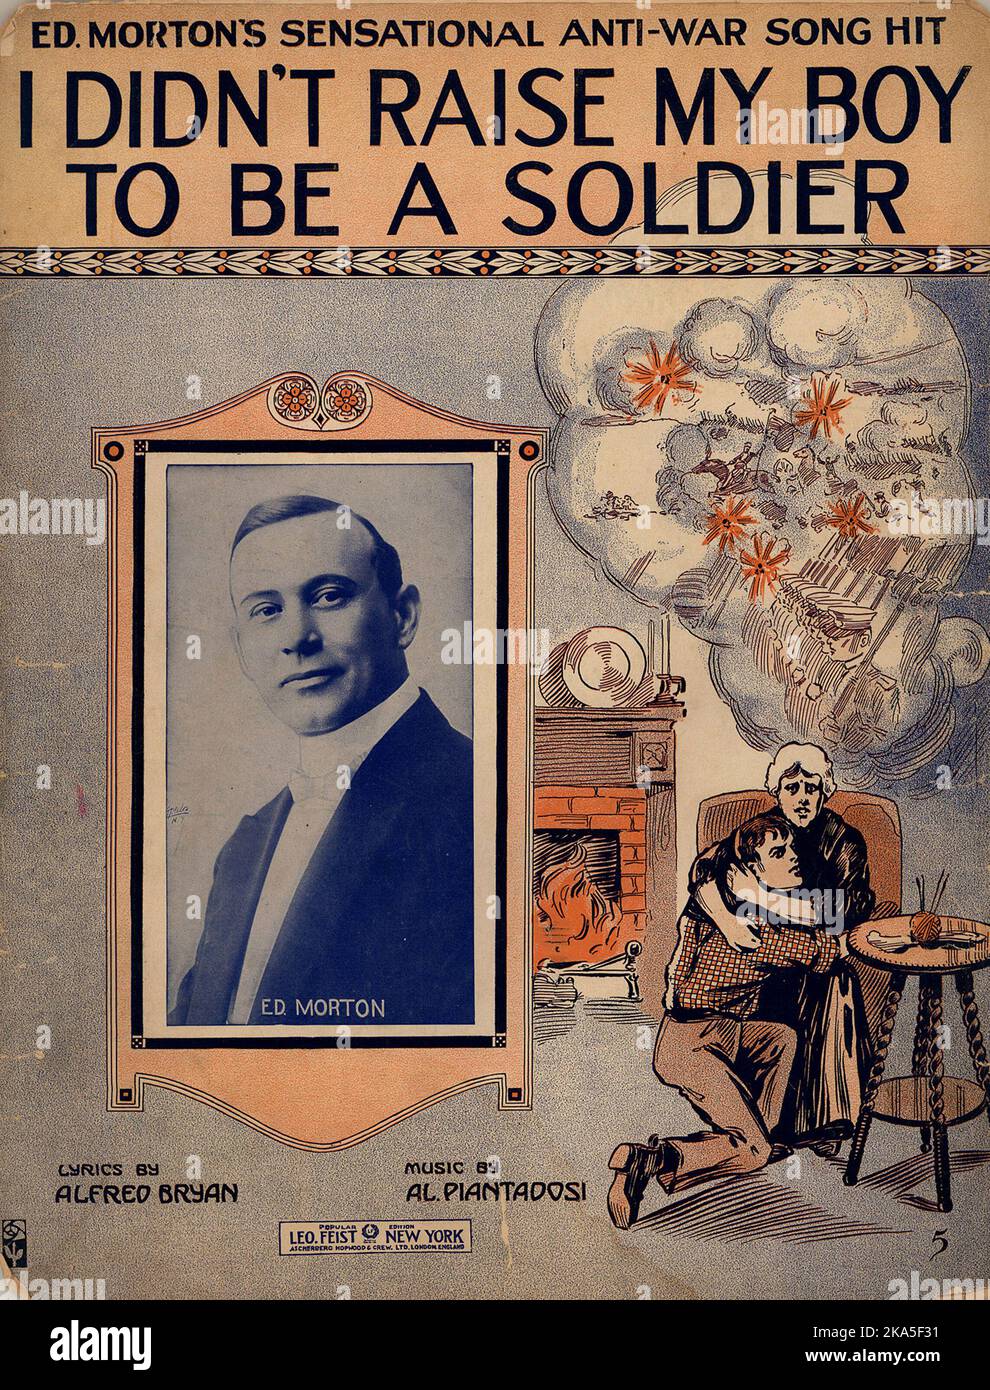 Der Song 'I didn't Raise My Boy to Be A Soldier' war 1915 ein Hit und verkaufte 650.000 Exemplare. Sie spiegelte die pazifistische und isolationistische Stimmung der Bevölkerung wider. Stockfoto